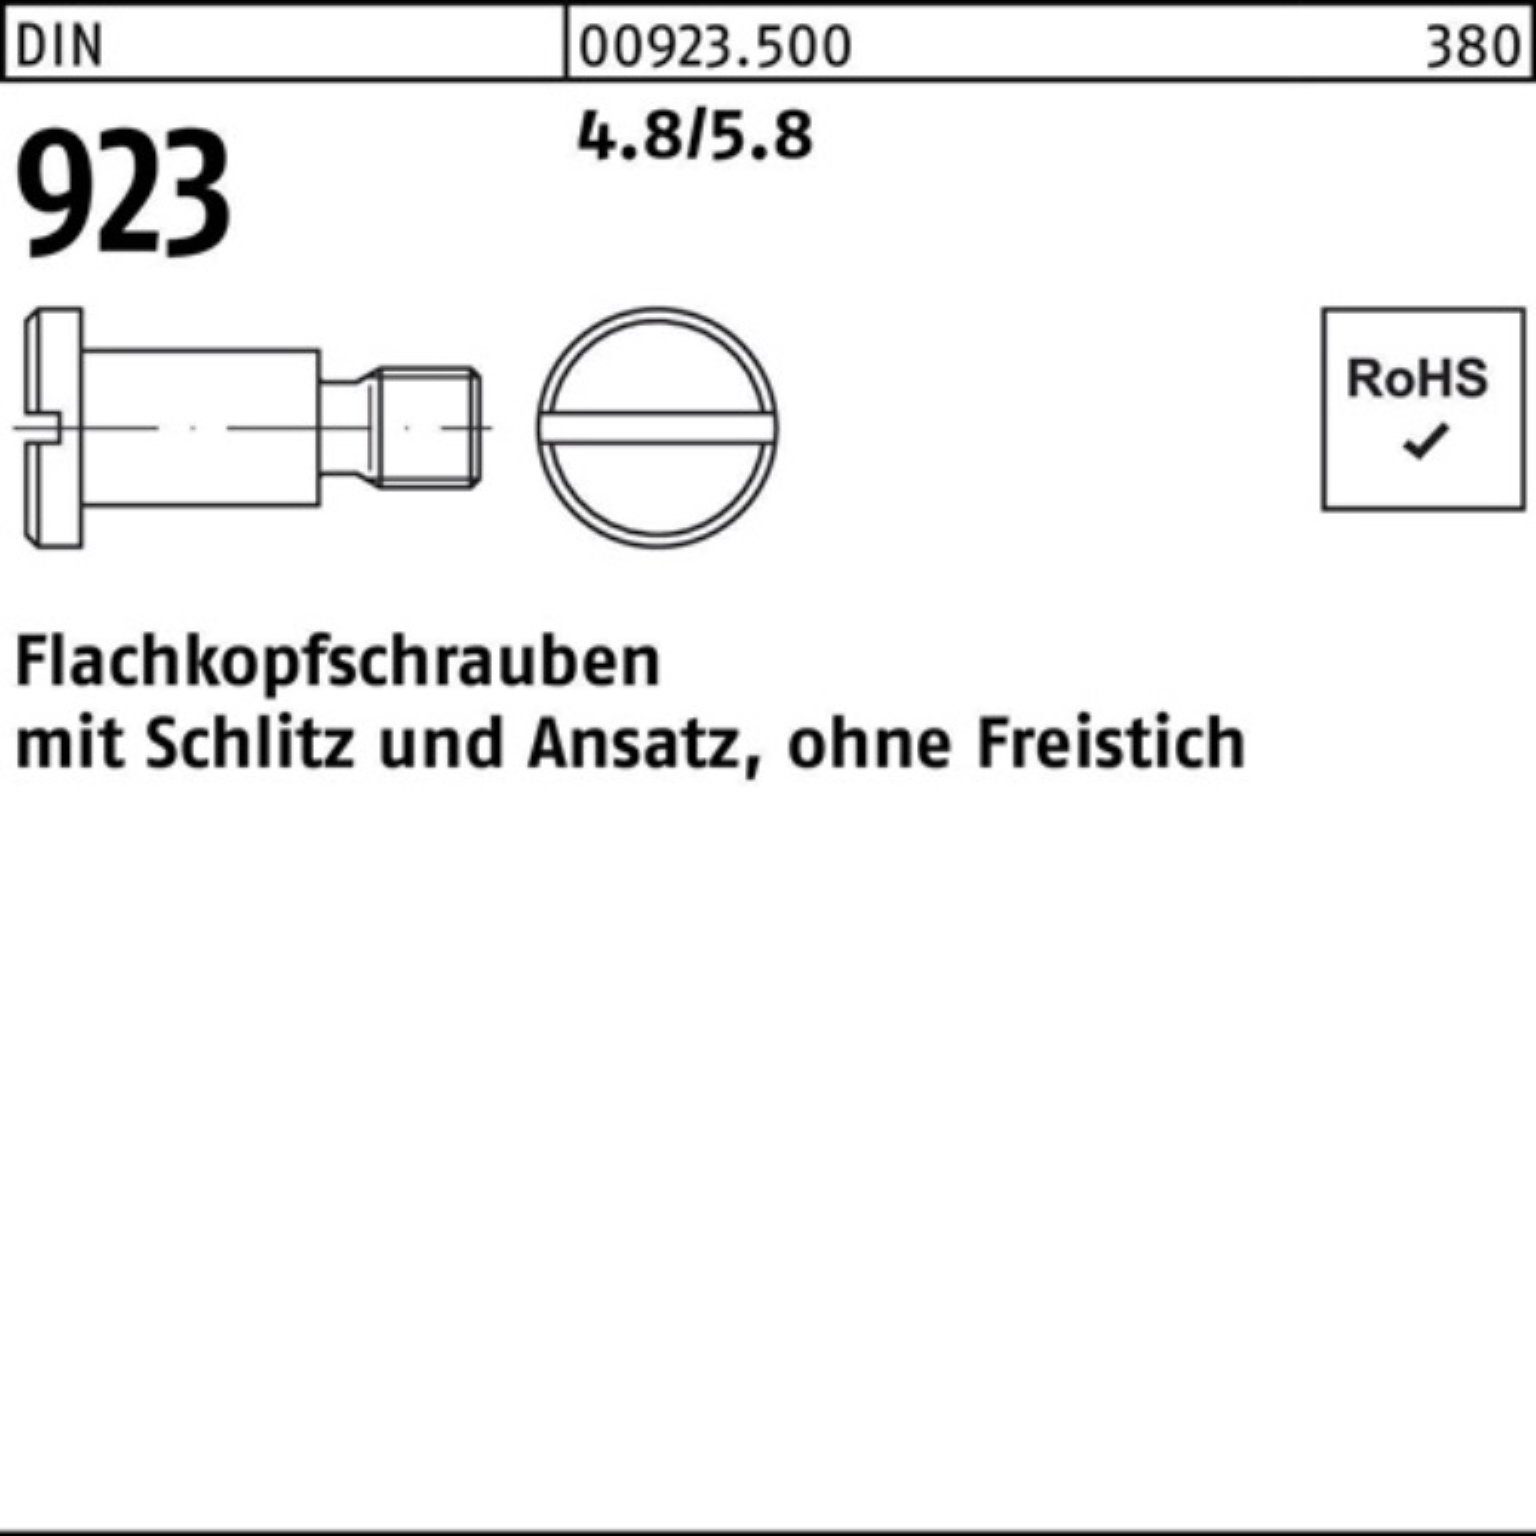 Reyher Schraube 100er Pack Flachkopfschraube DIN 923 Schlitz/Ansatz M5x12x 7,0 4.8/5.8